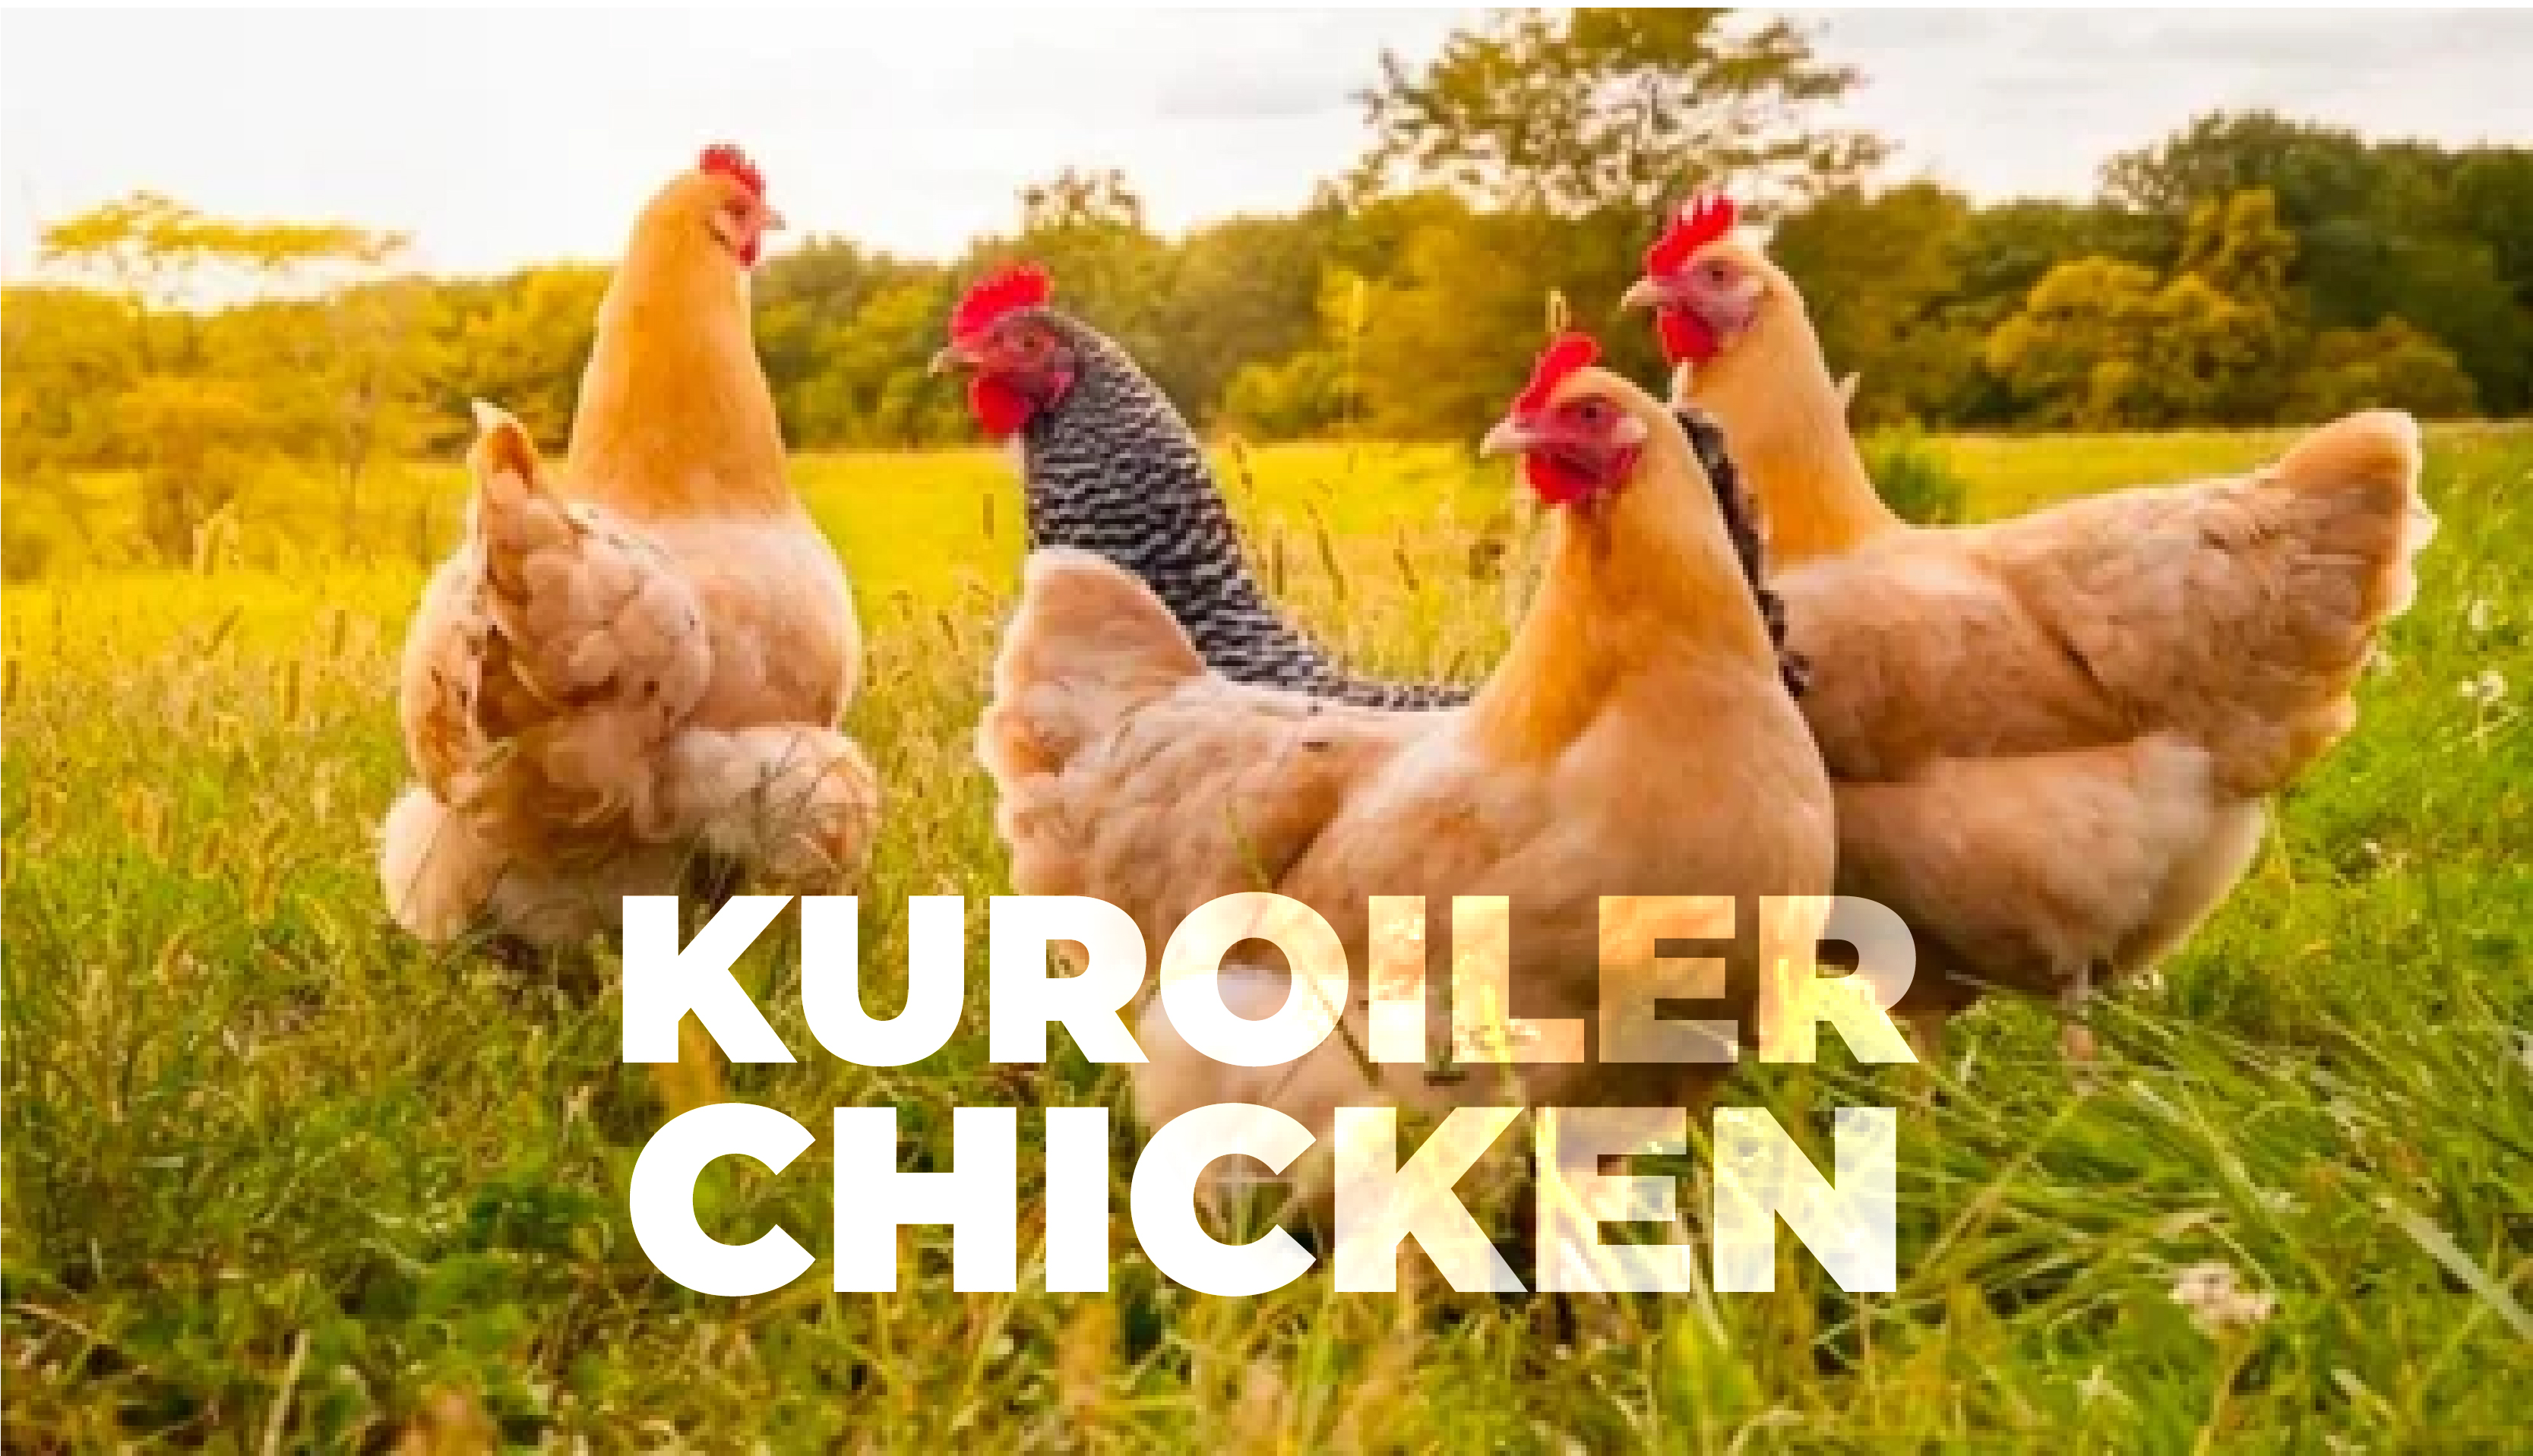 understanding KUROILER chicken